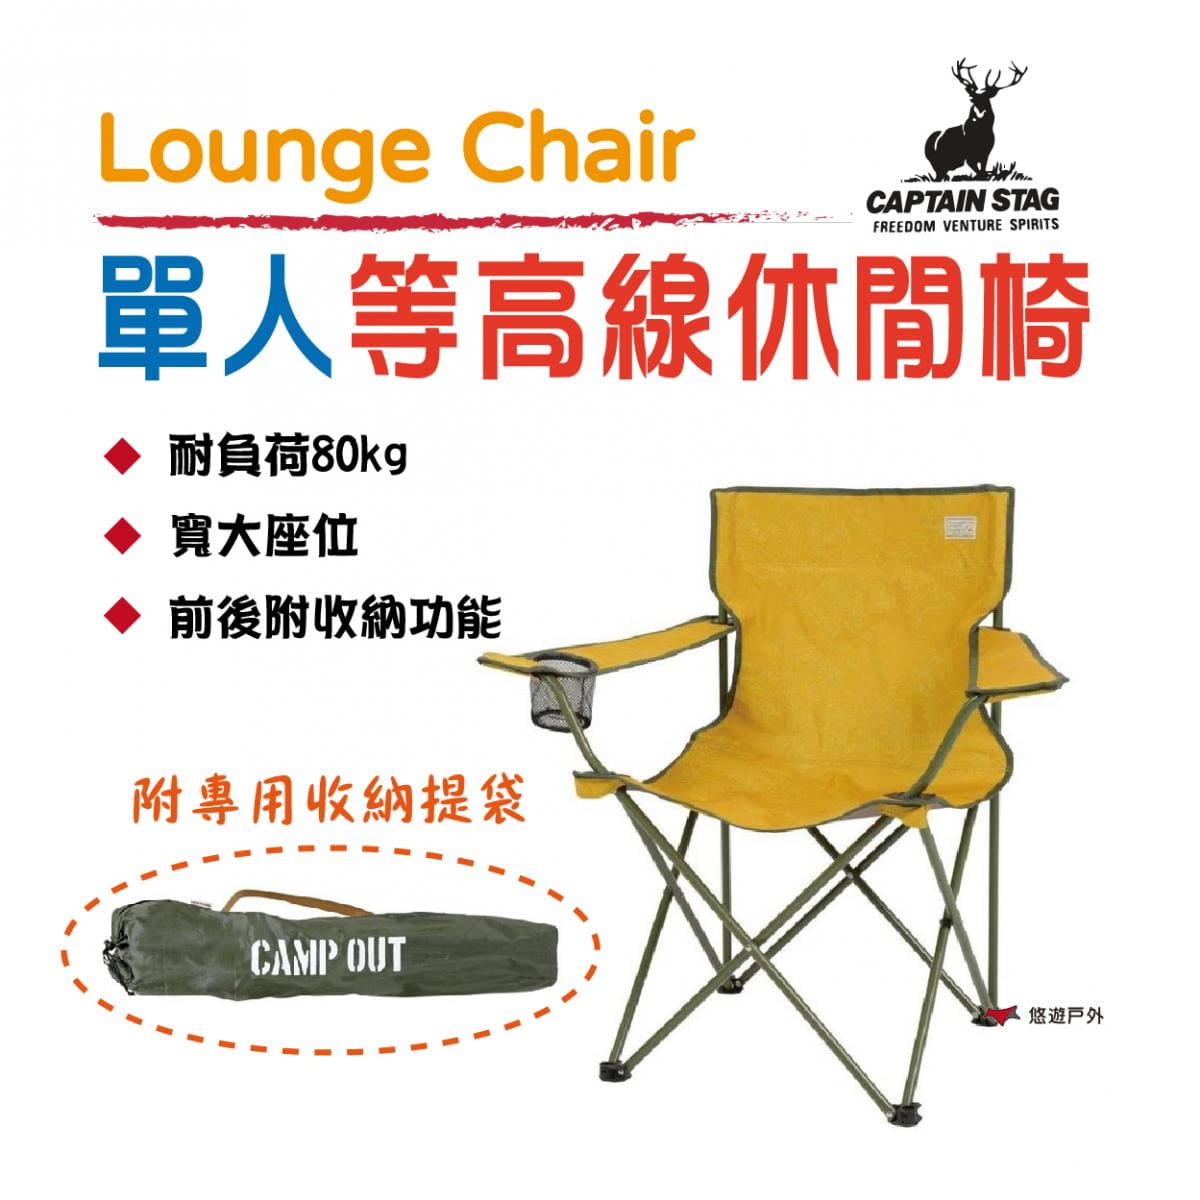 【日本鹿牌】等高線休閒椅 UC-1805 露營椅 休閒椅 摺疊椅 便攜椅 單人 釣魚 居家 露營 0